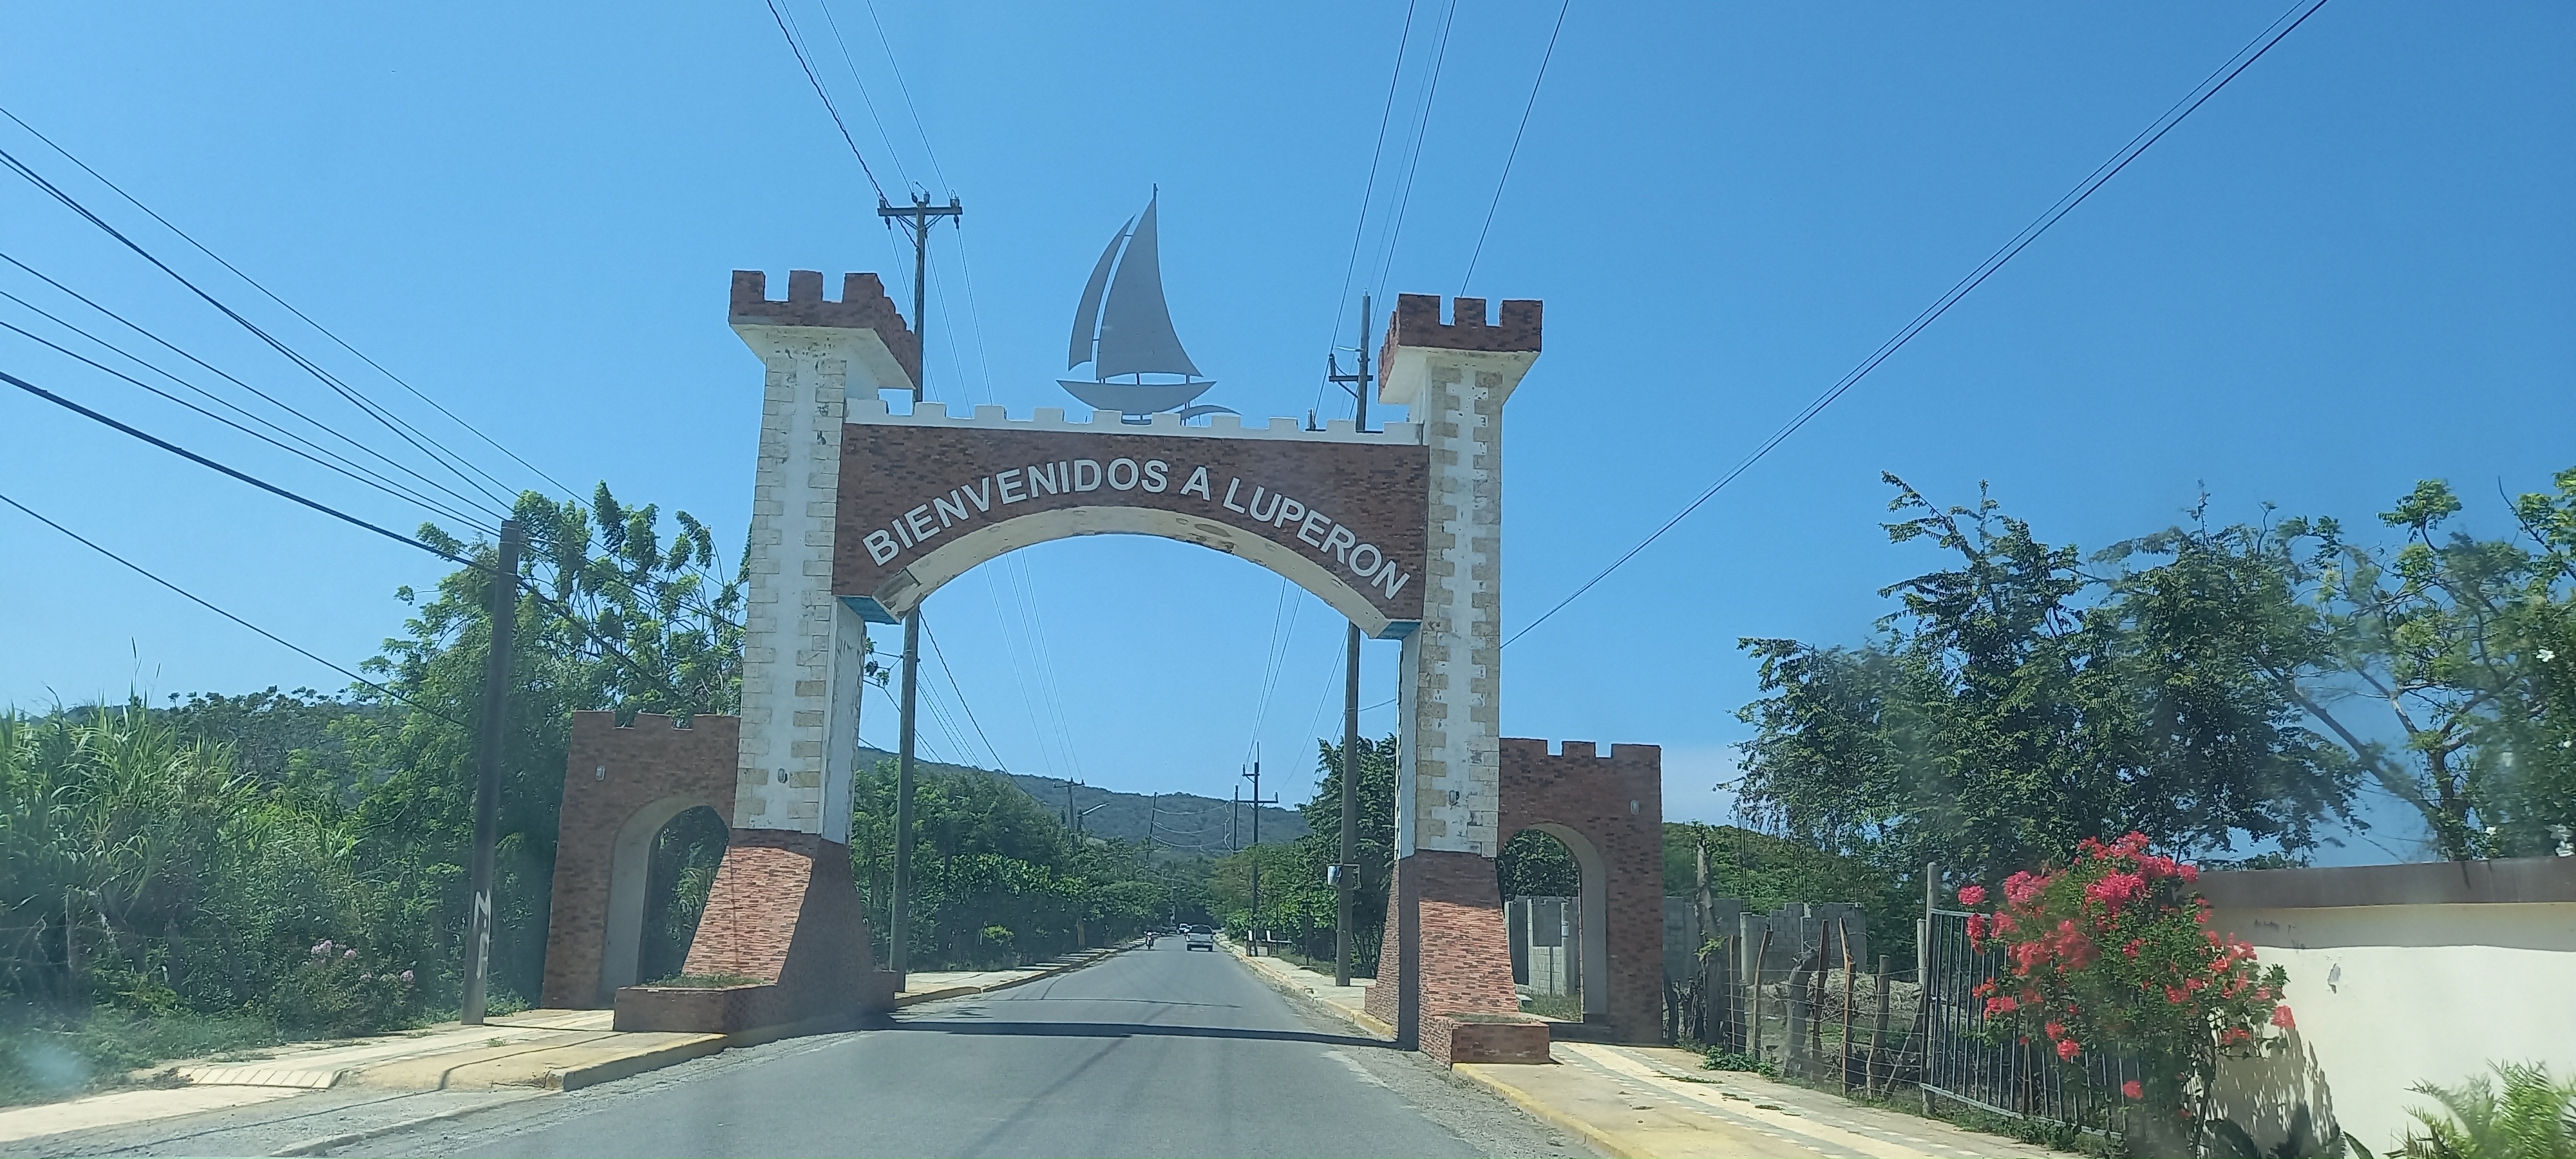 Inician fiestas patronales San Isidro Labrador en el municipio de Luperón